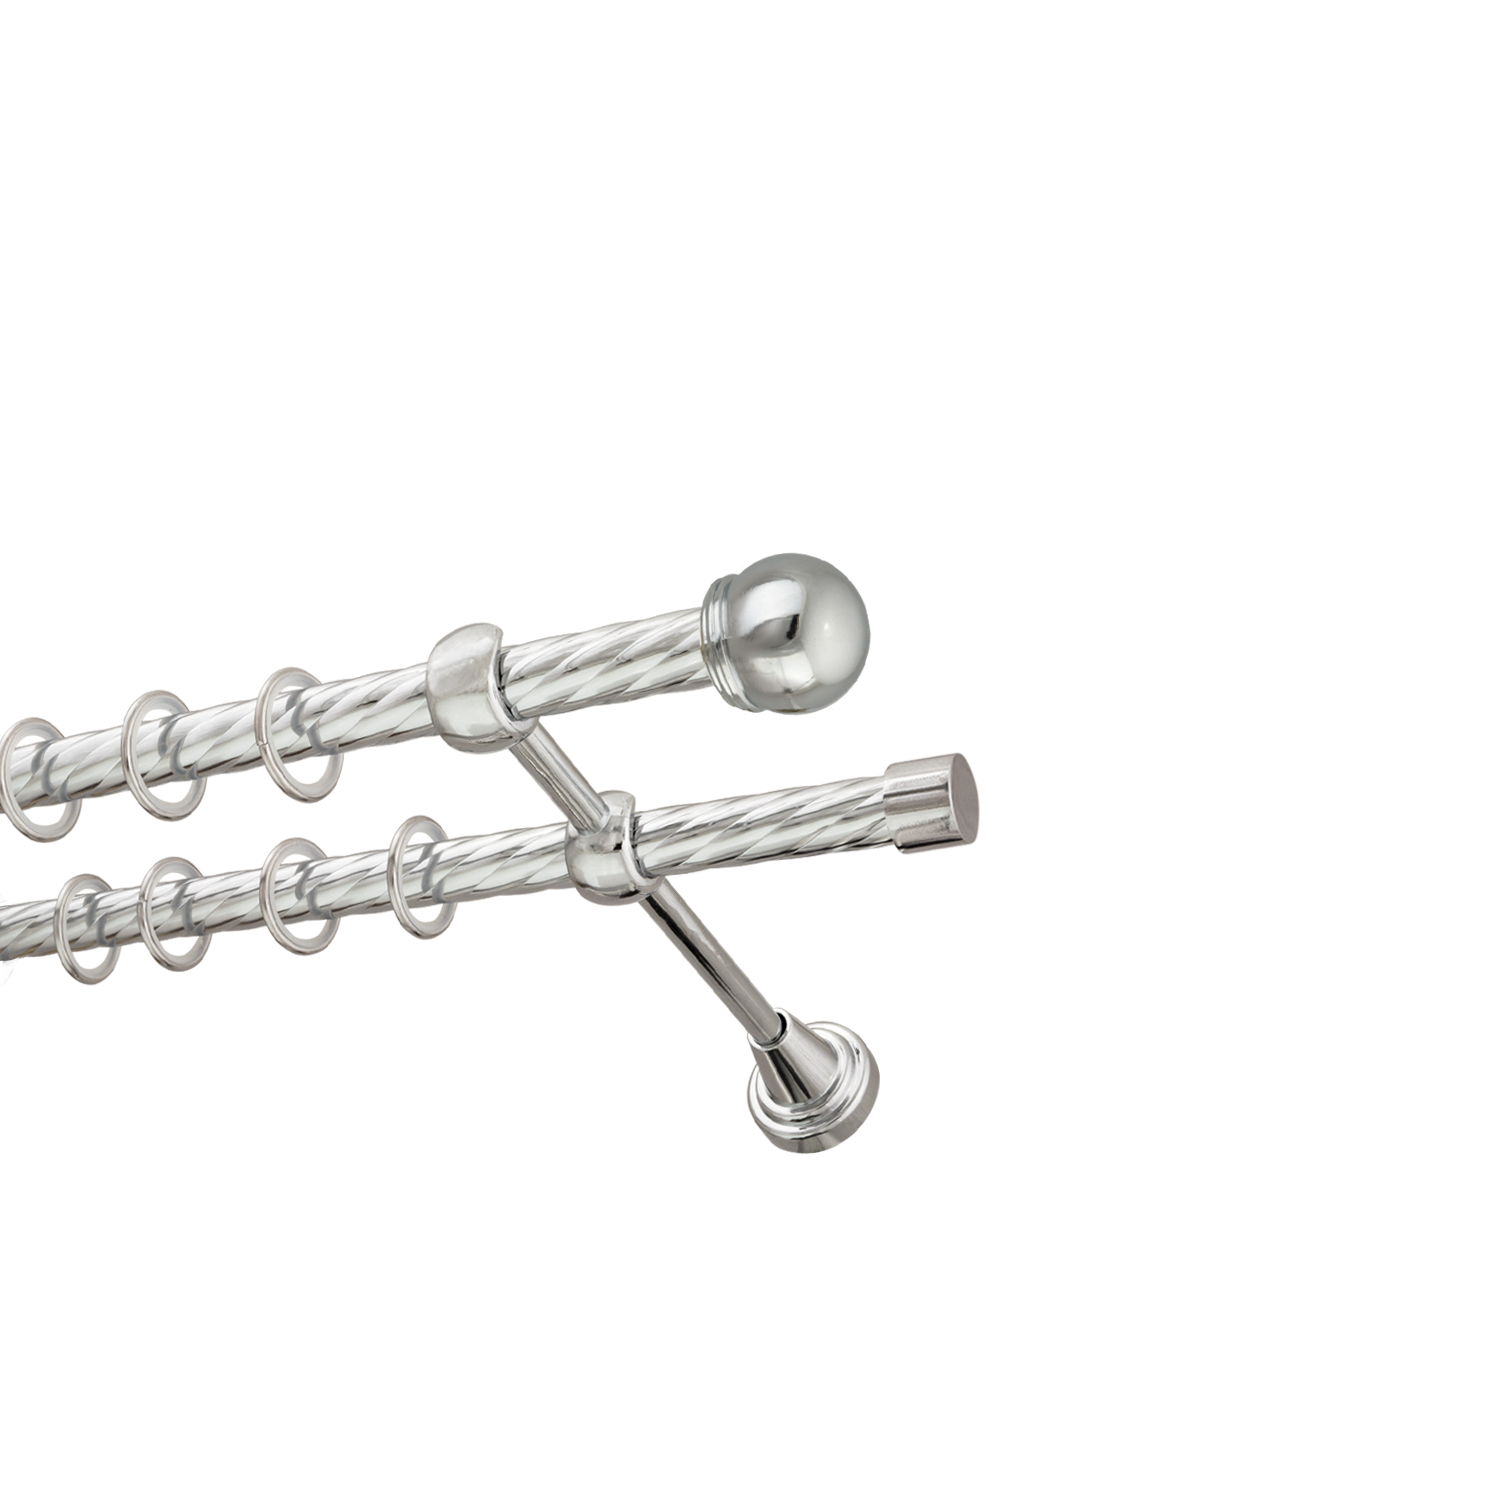 Металлический карниз для штор Вива, двухрядный 16/16 мм, серебро, витая штанга, длина 180 см